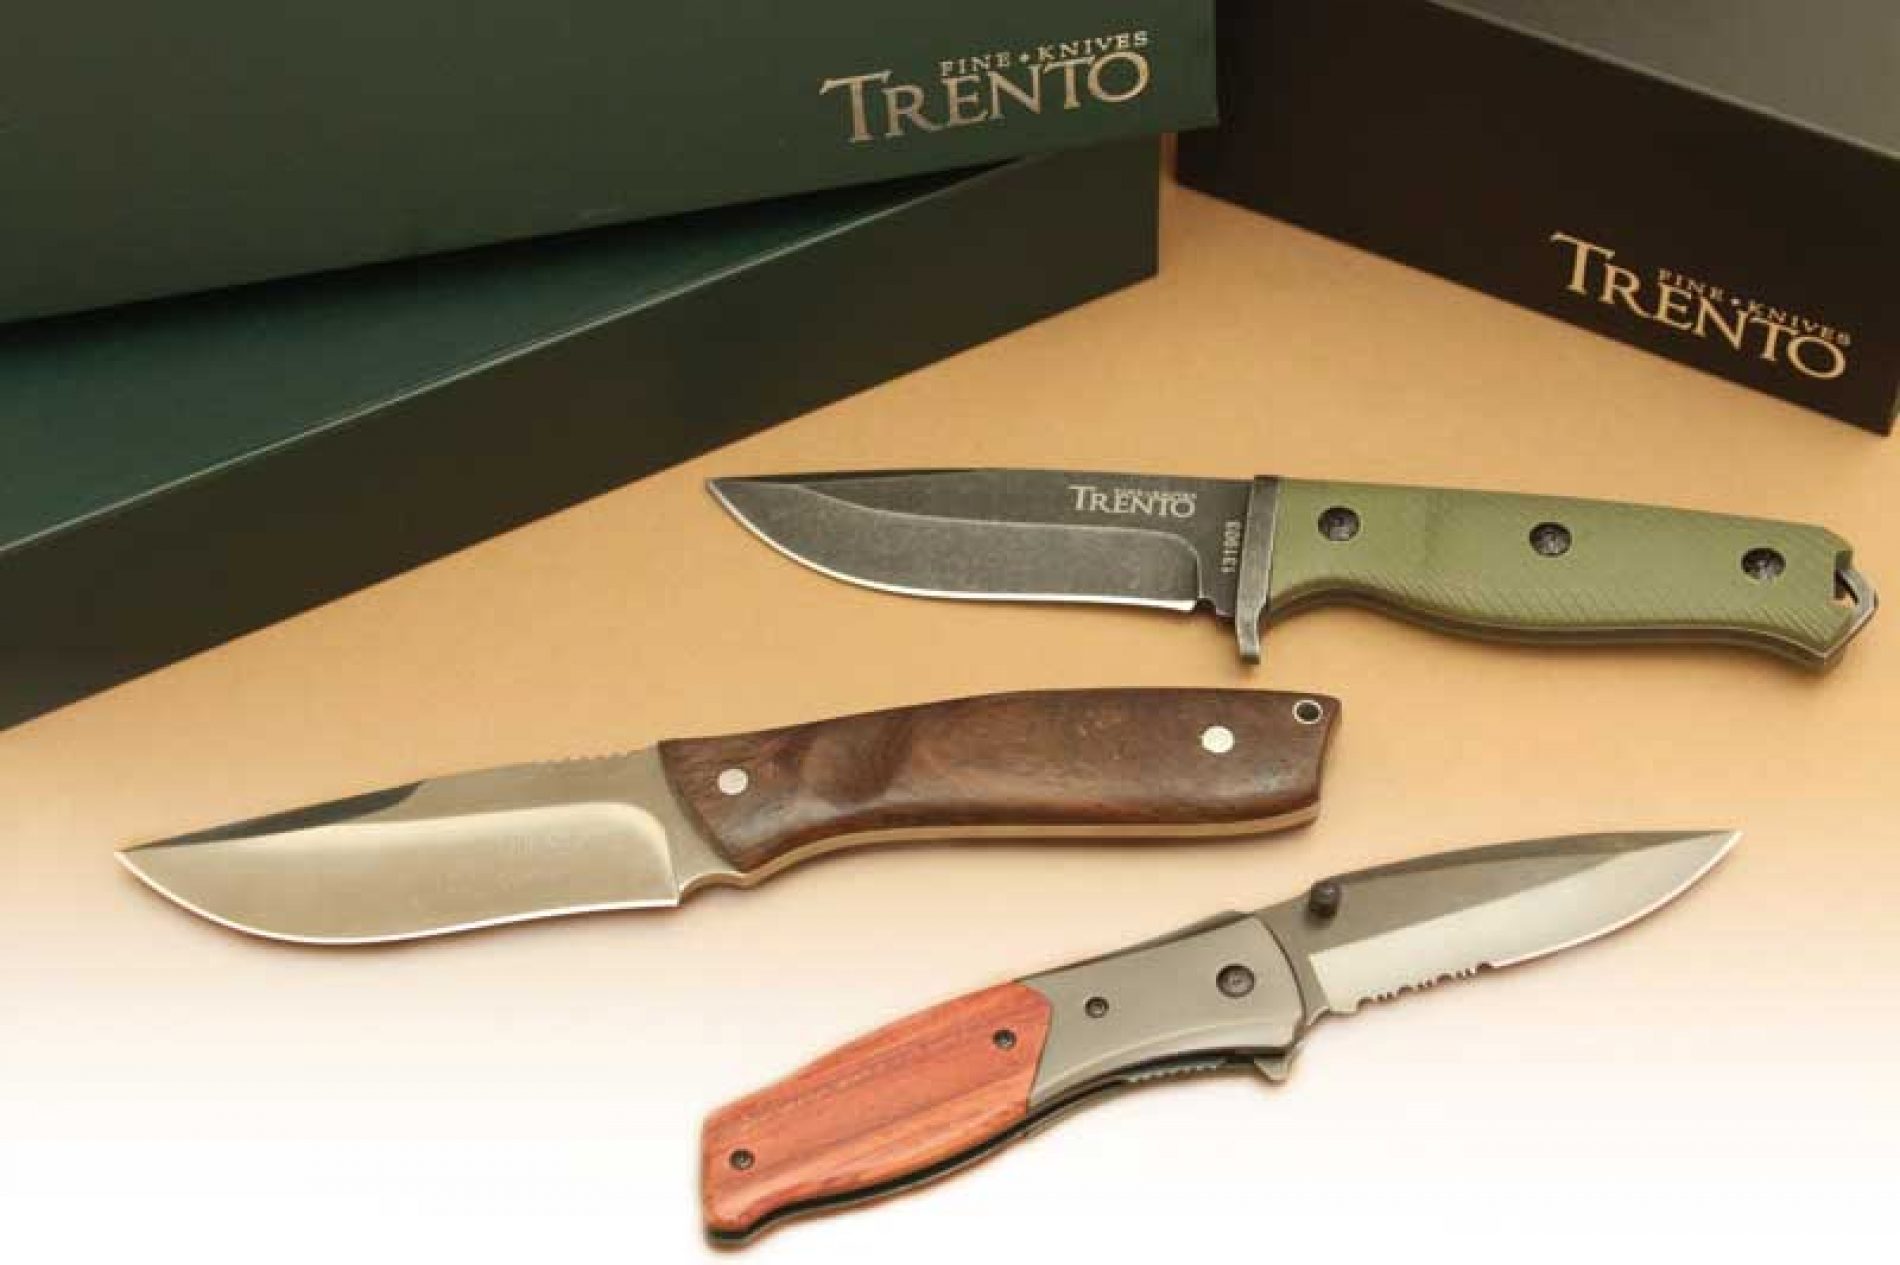 Cuchillos y navajas Trento, calidad a precios sorprendentes